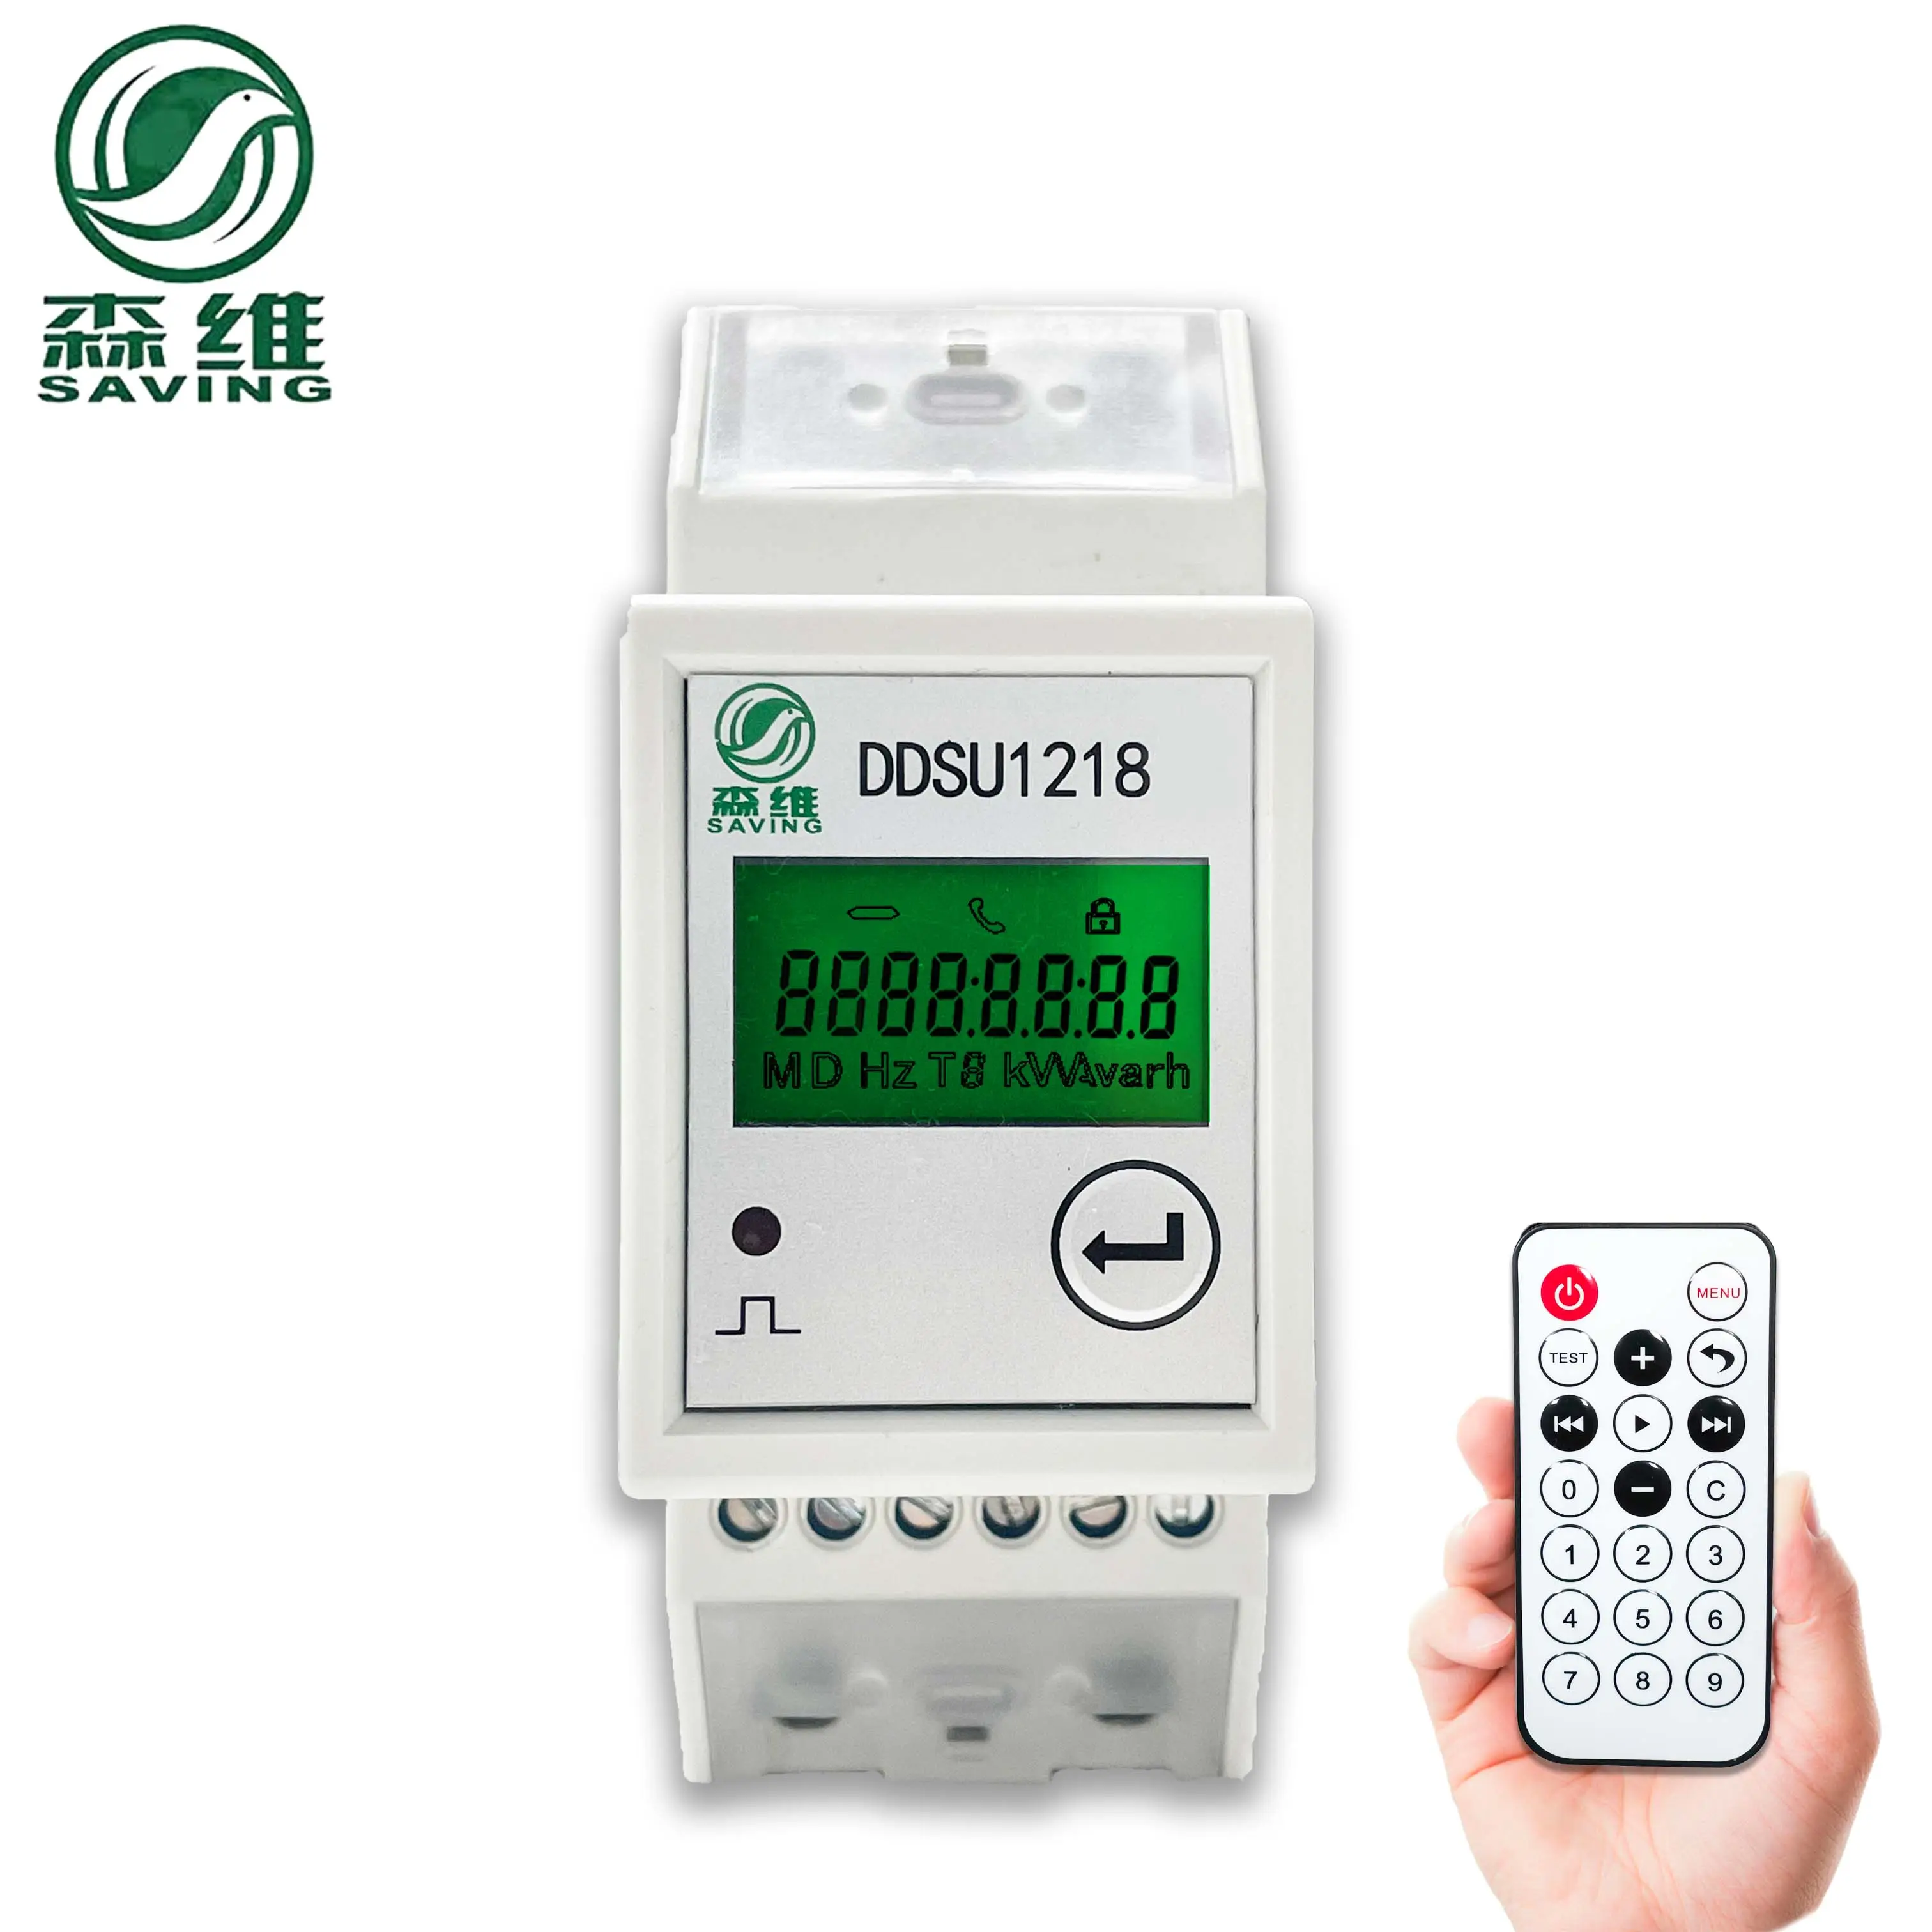 الصين الصانع توفير مرحلة واحدة Dc مقياس الطاقة شاشة الكريستال السائل عداد الطاقة الذكية مقياس الطاقة المدفوعة مسبقا عداد كهربائي مع التحكم عن بعد